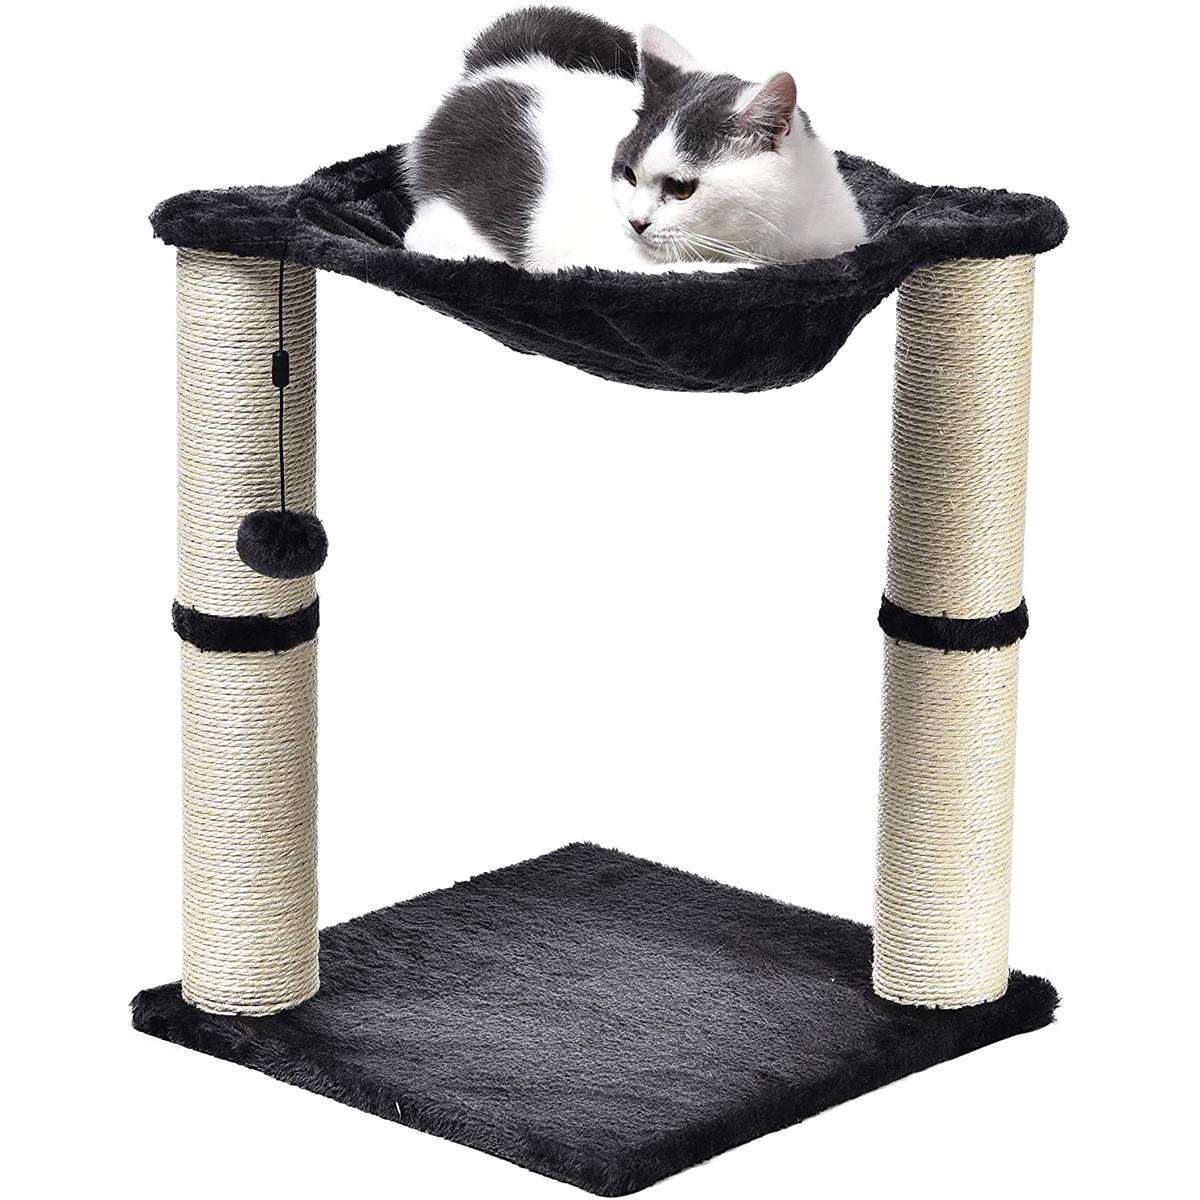 Amazon Basics Cat Condo Tree Tower for $18.89